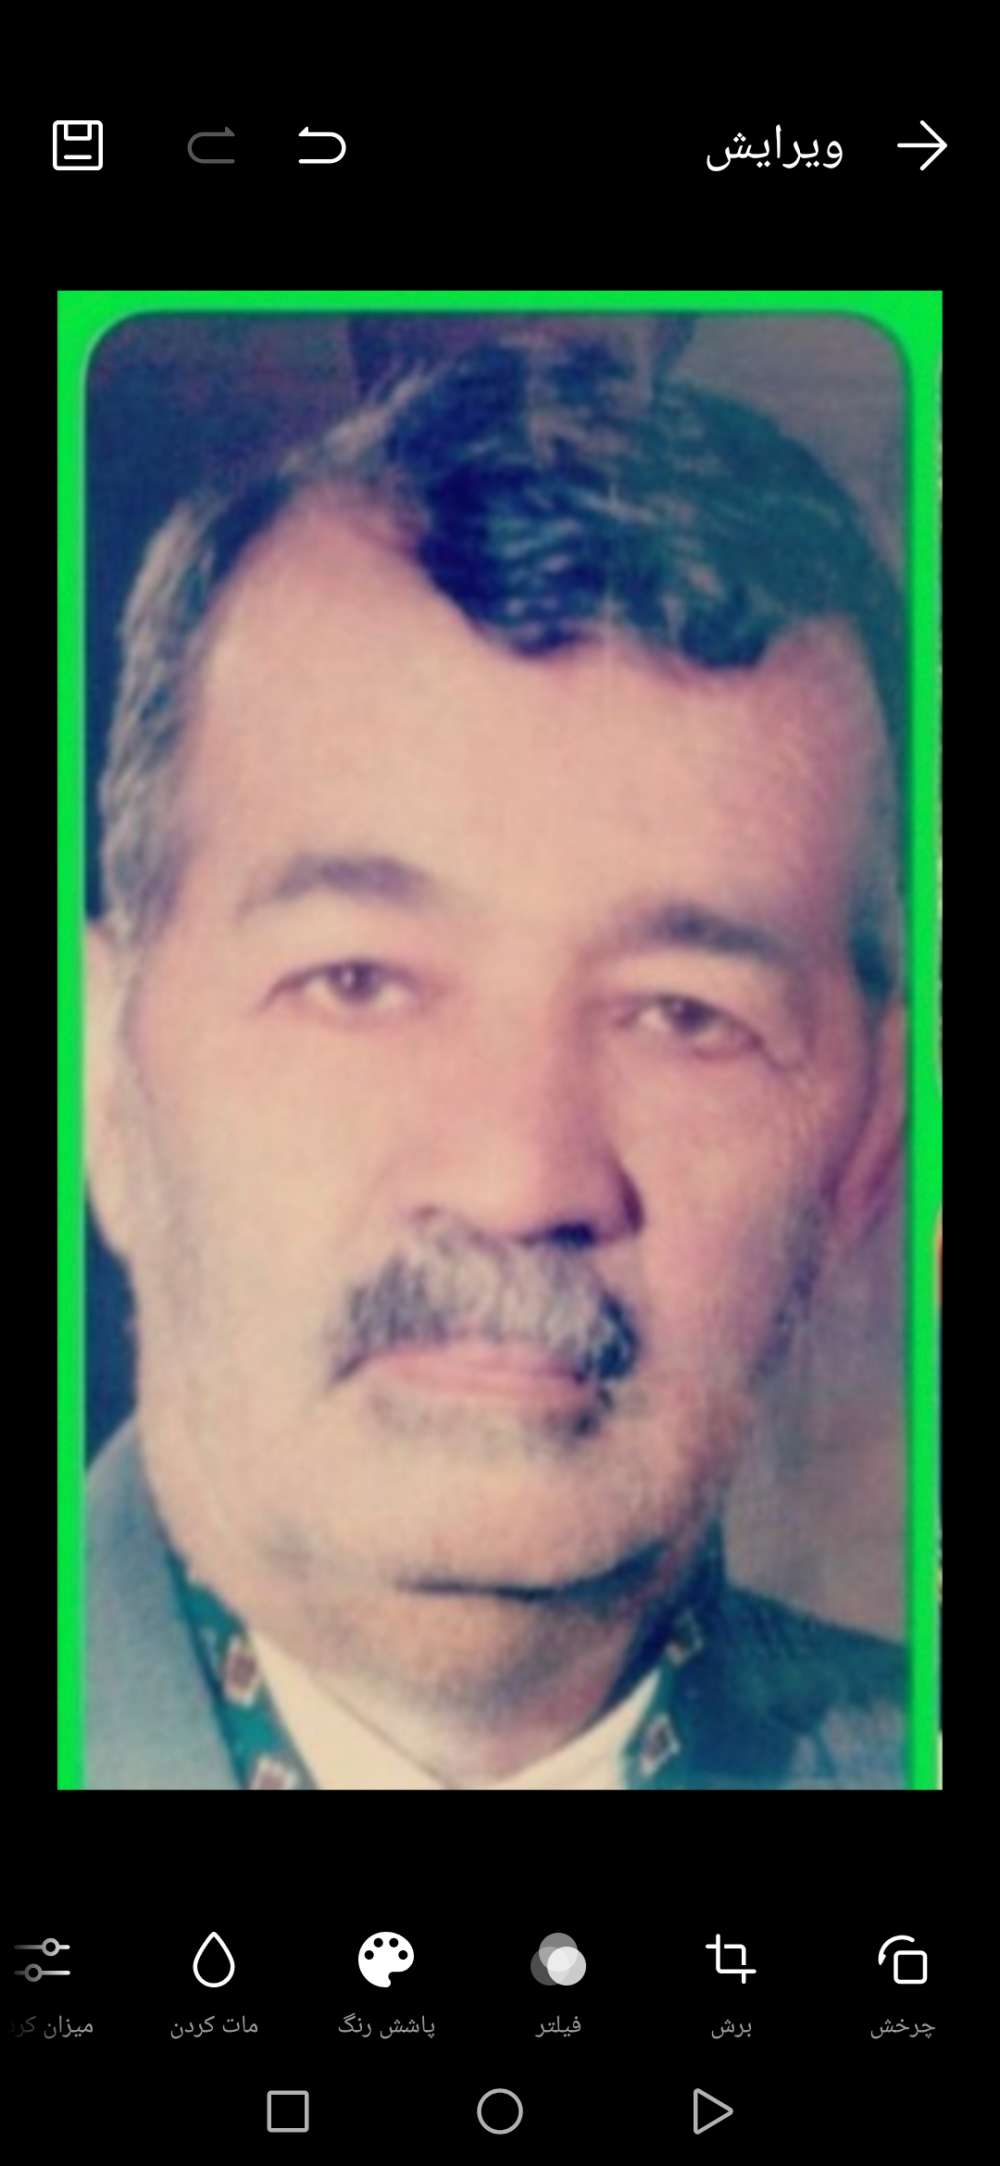 مرحوم حاج سید احمد گلچین حسینی